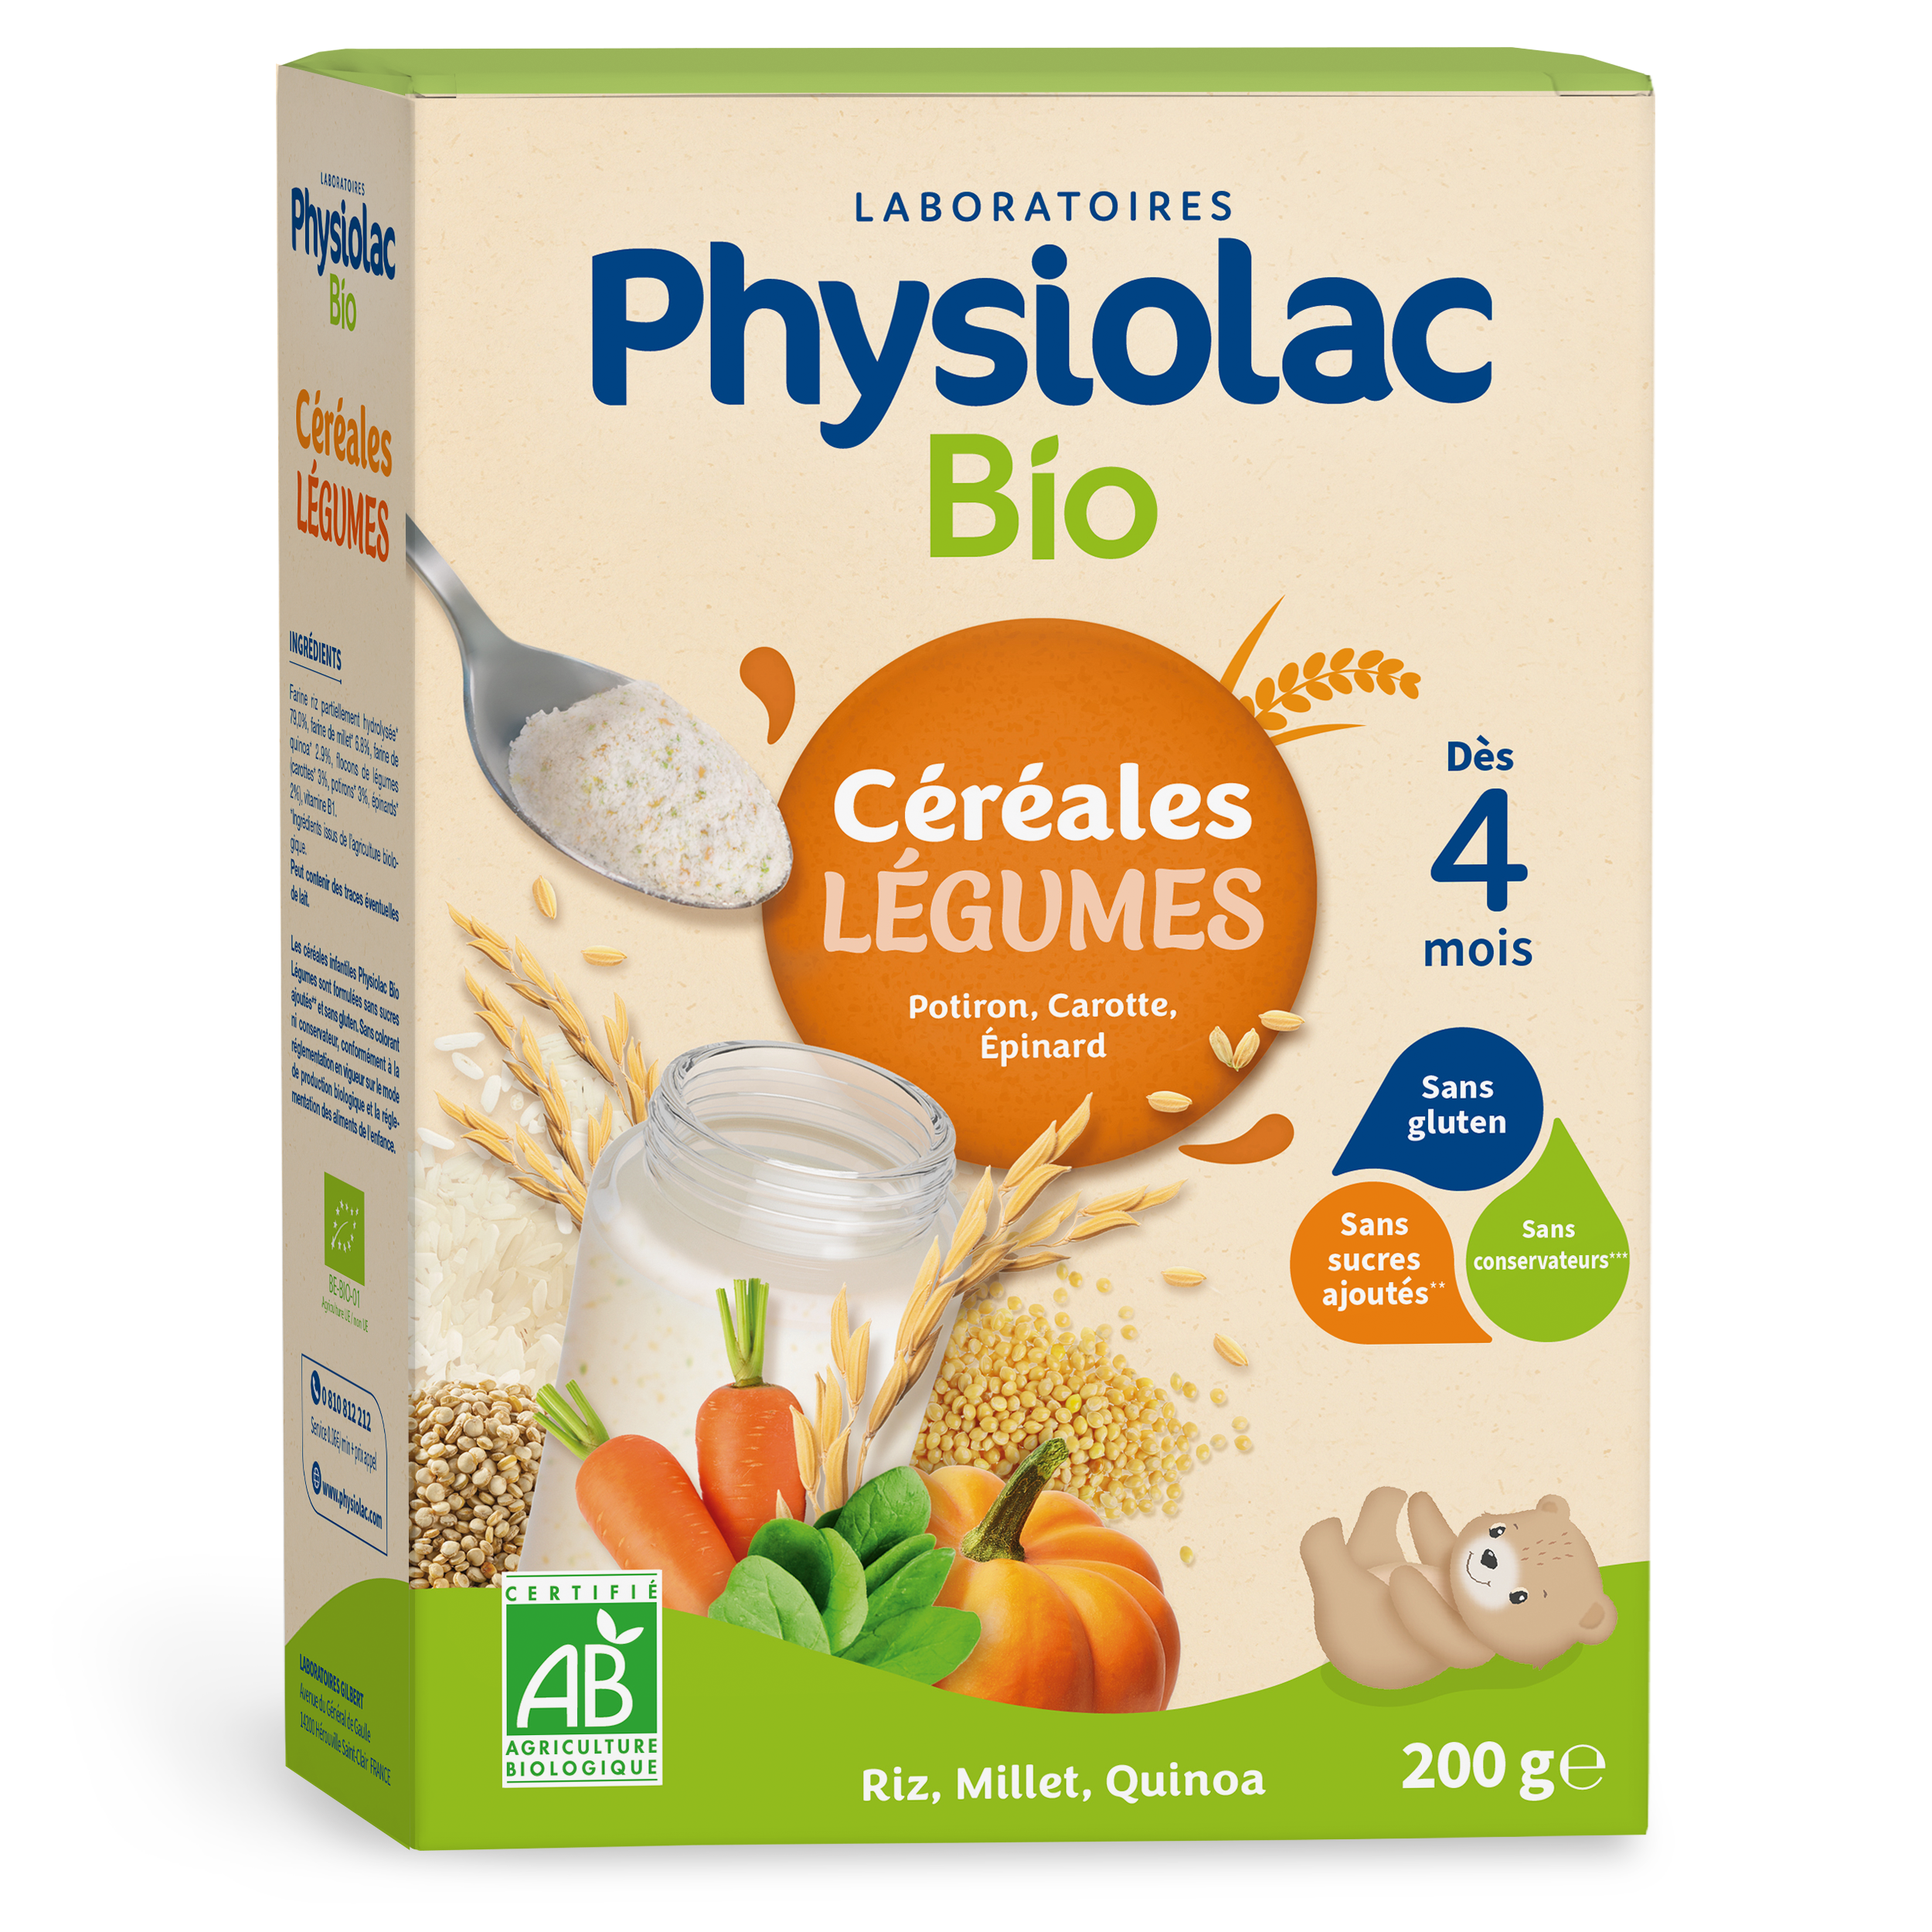 Nestlé Céréales pour bébés Lait Semoule 4 mois - acheter sur Galaxus